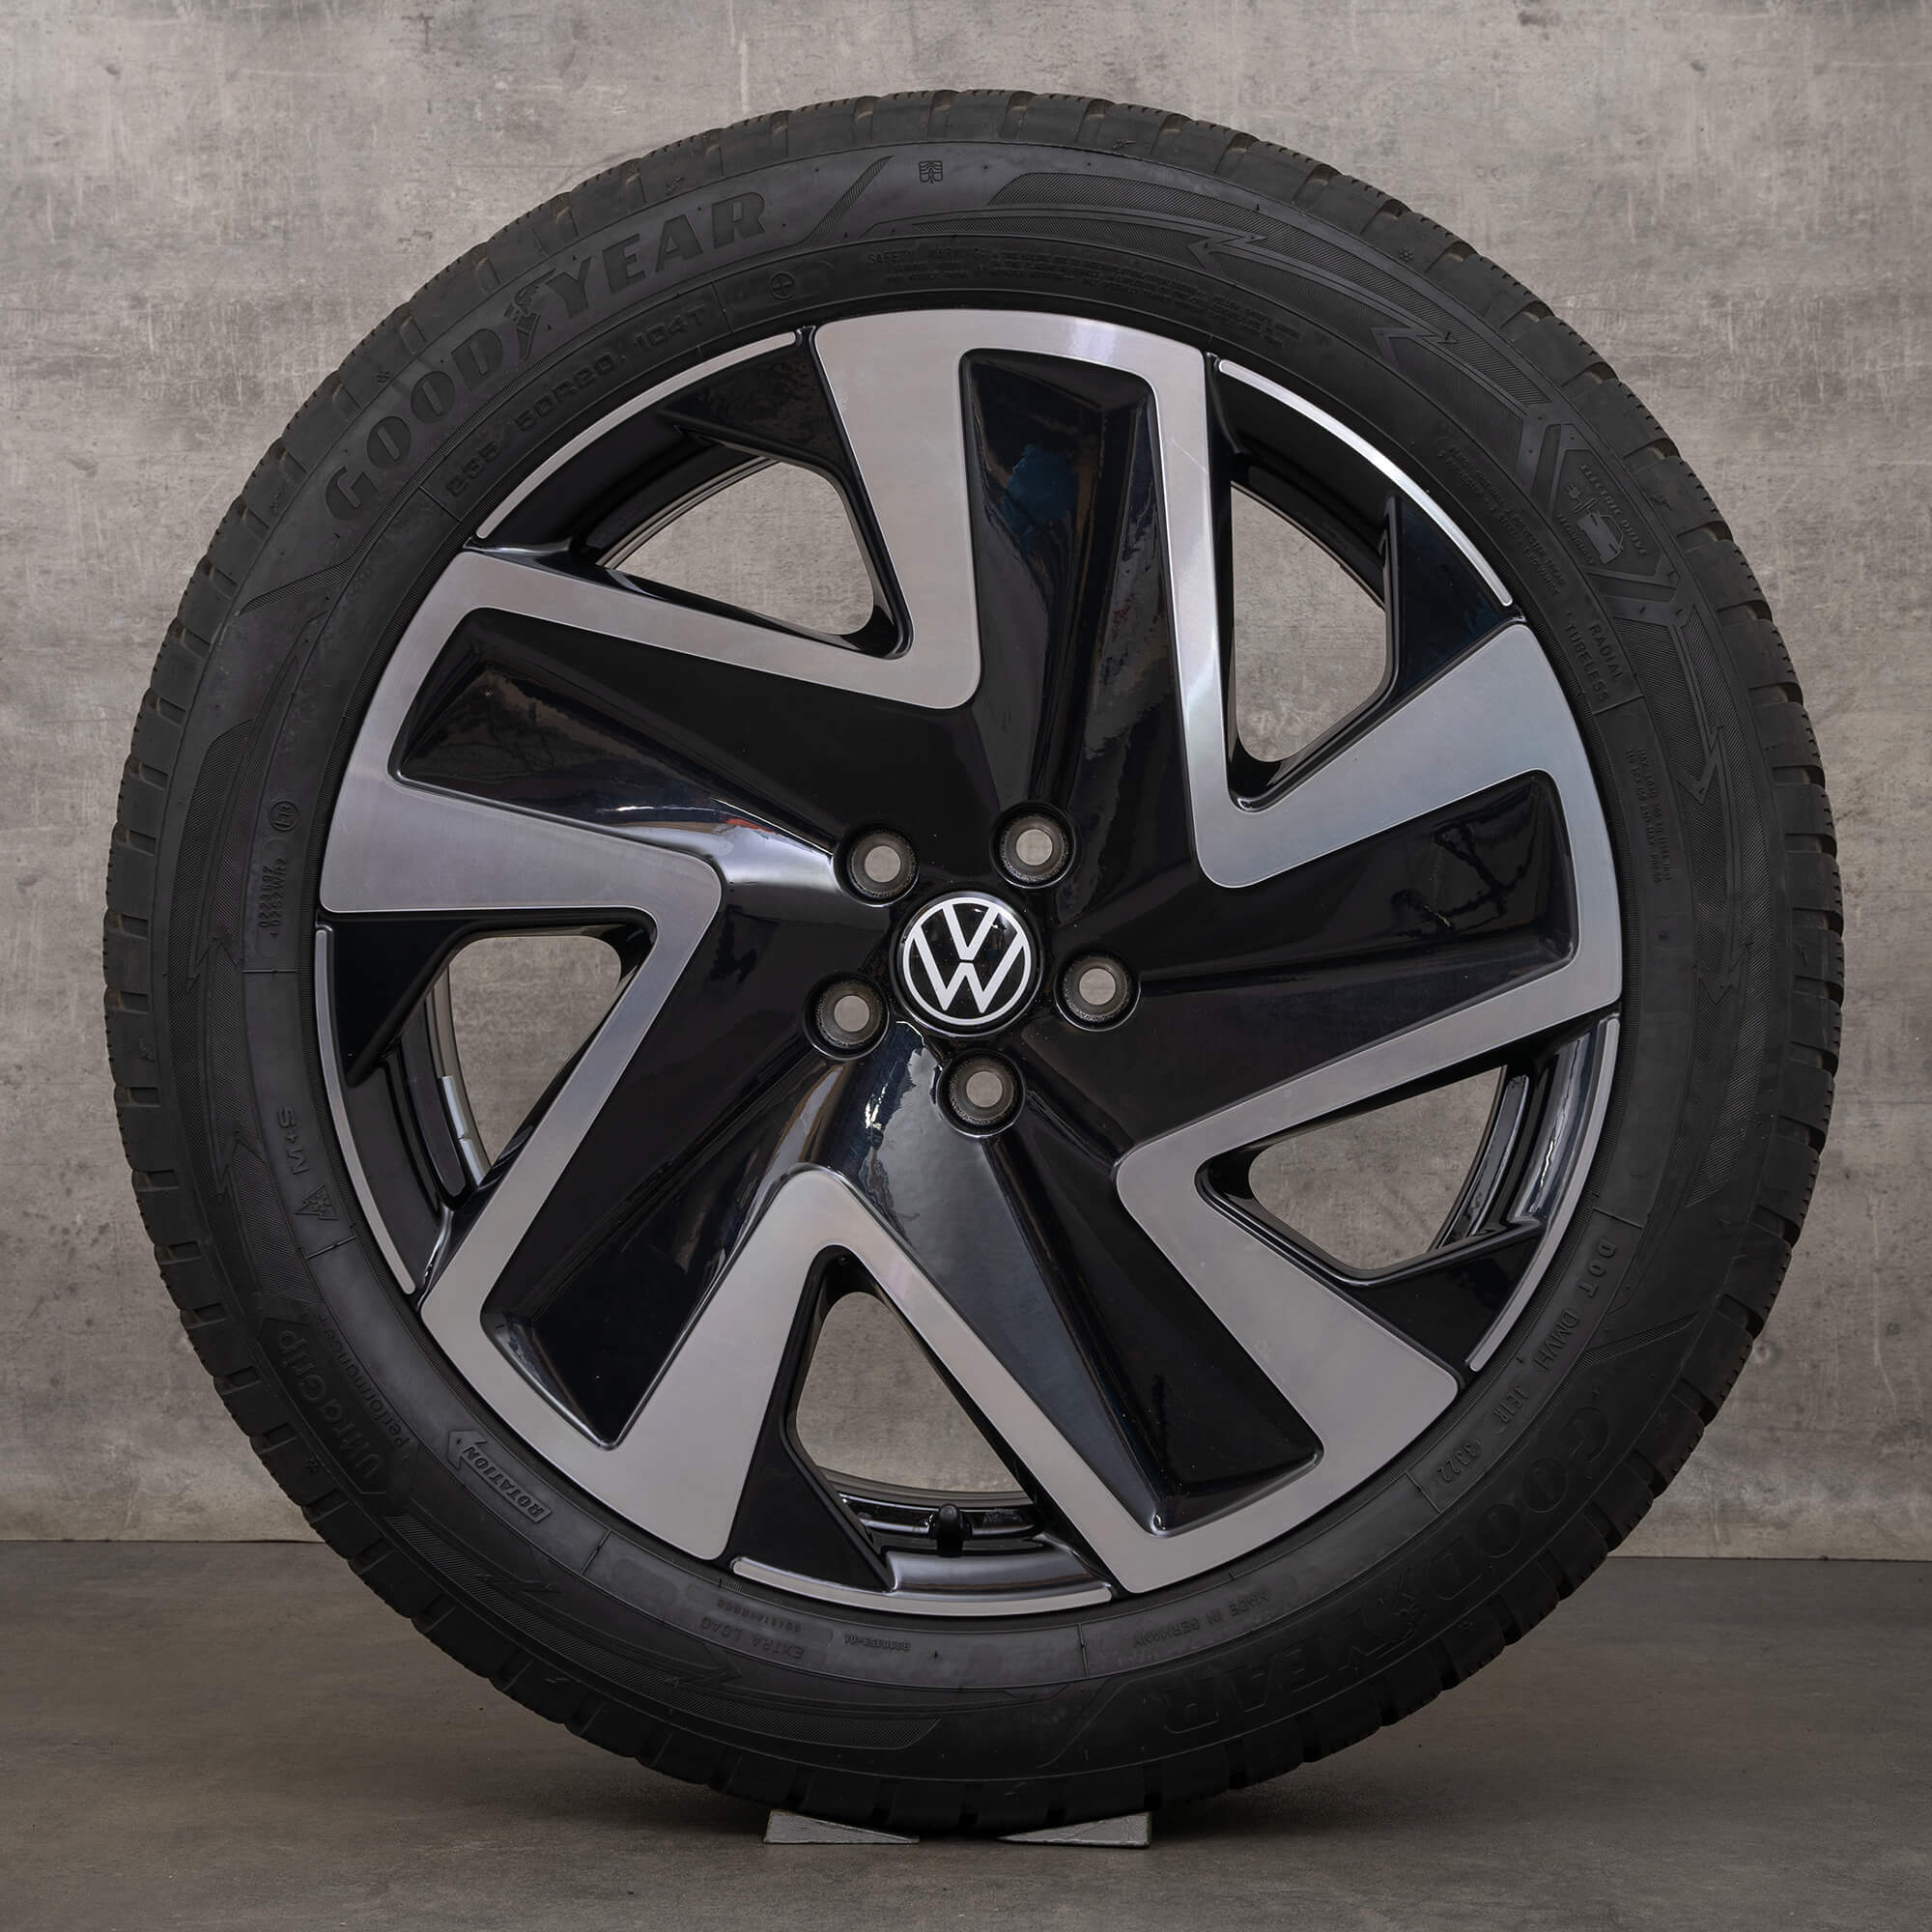 ID VW. Ruote invernali Buzz Pro Cerchi da 20 pollici Pneumatici in alluminio